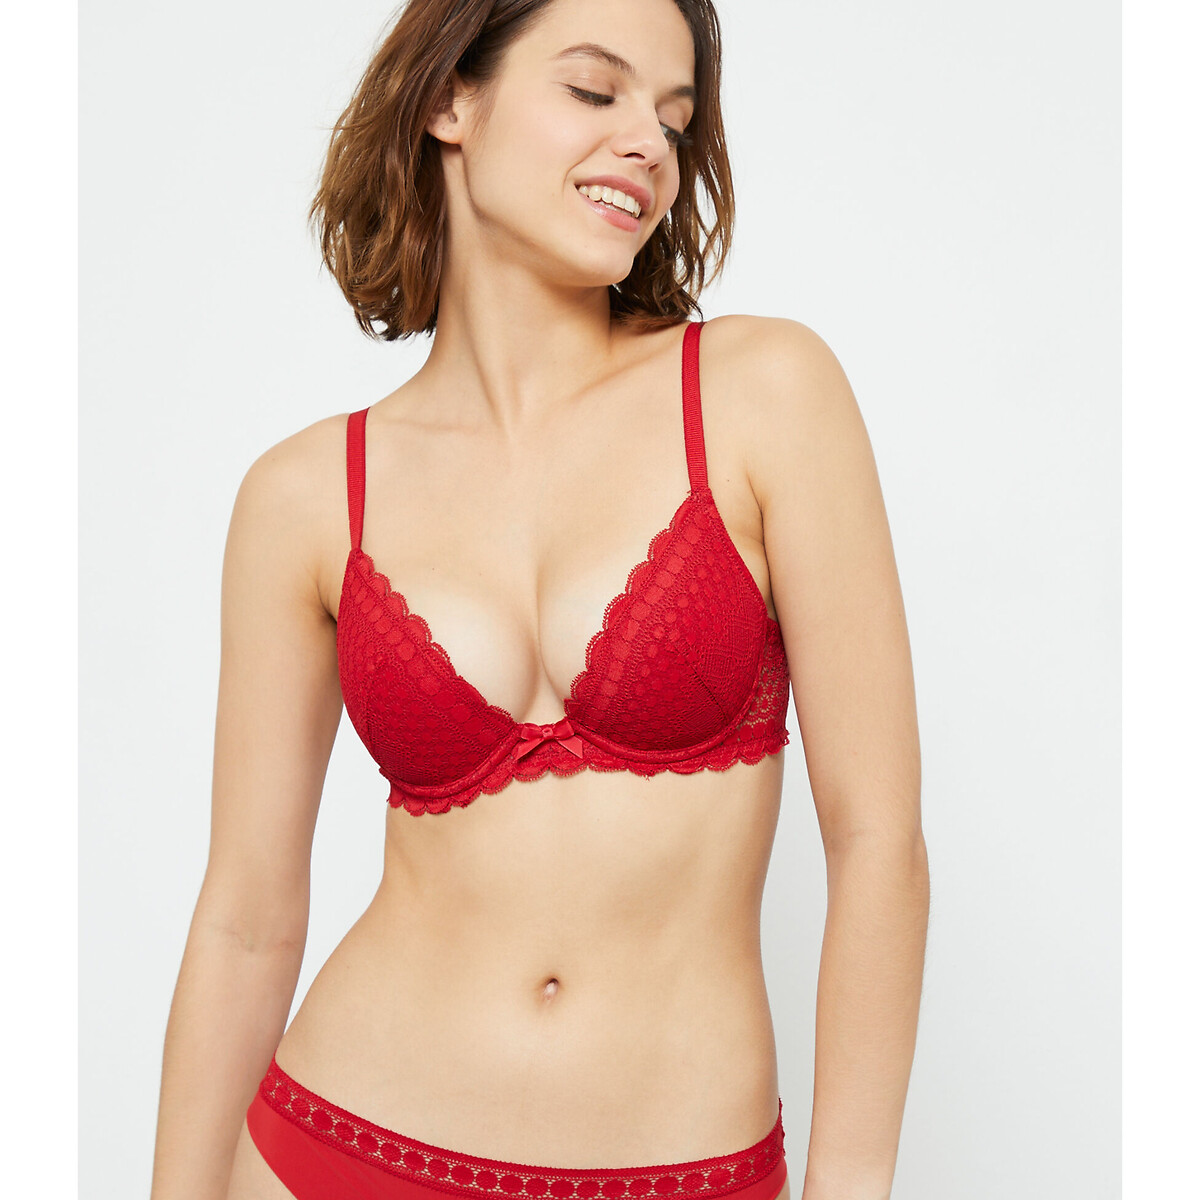 Cherie cherie recycled bra n°2 - push-up plunge bra, red, Etam